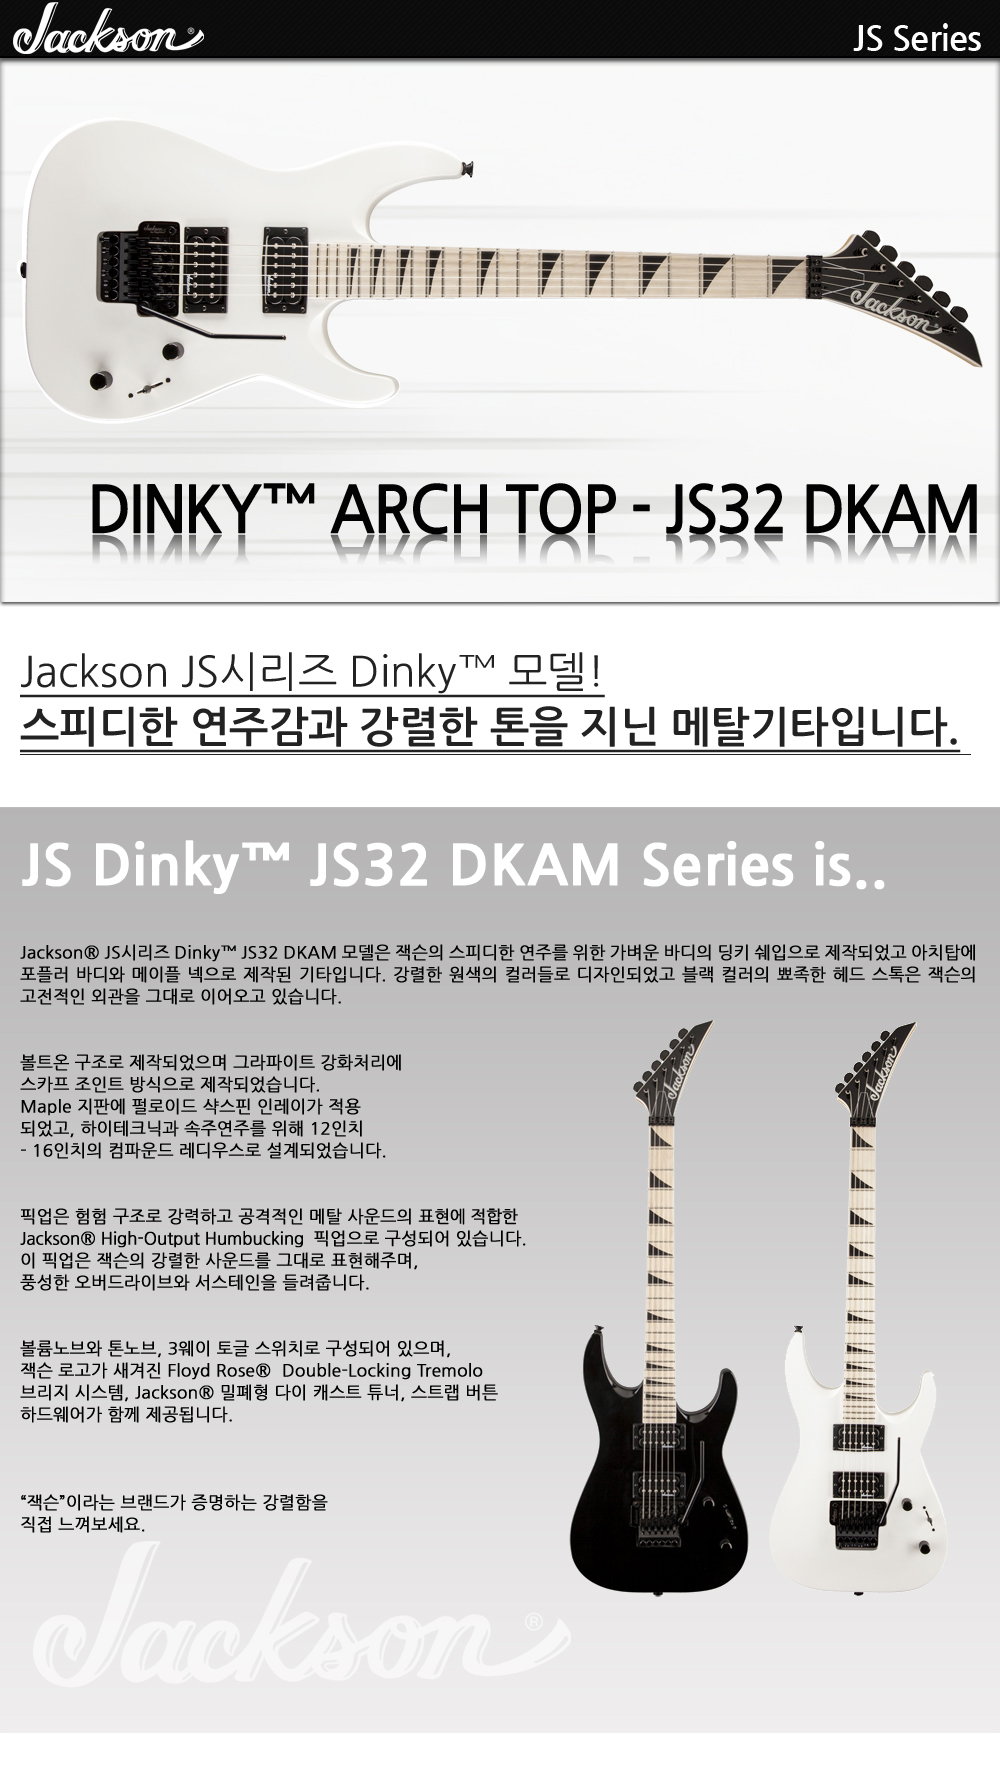 Jackson-JS-Dinky-JS32-DKAM-SnowWhite_1_114859.jpg